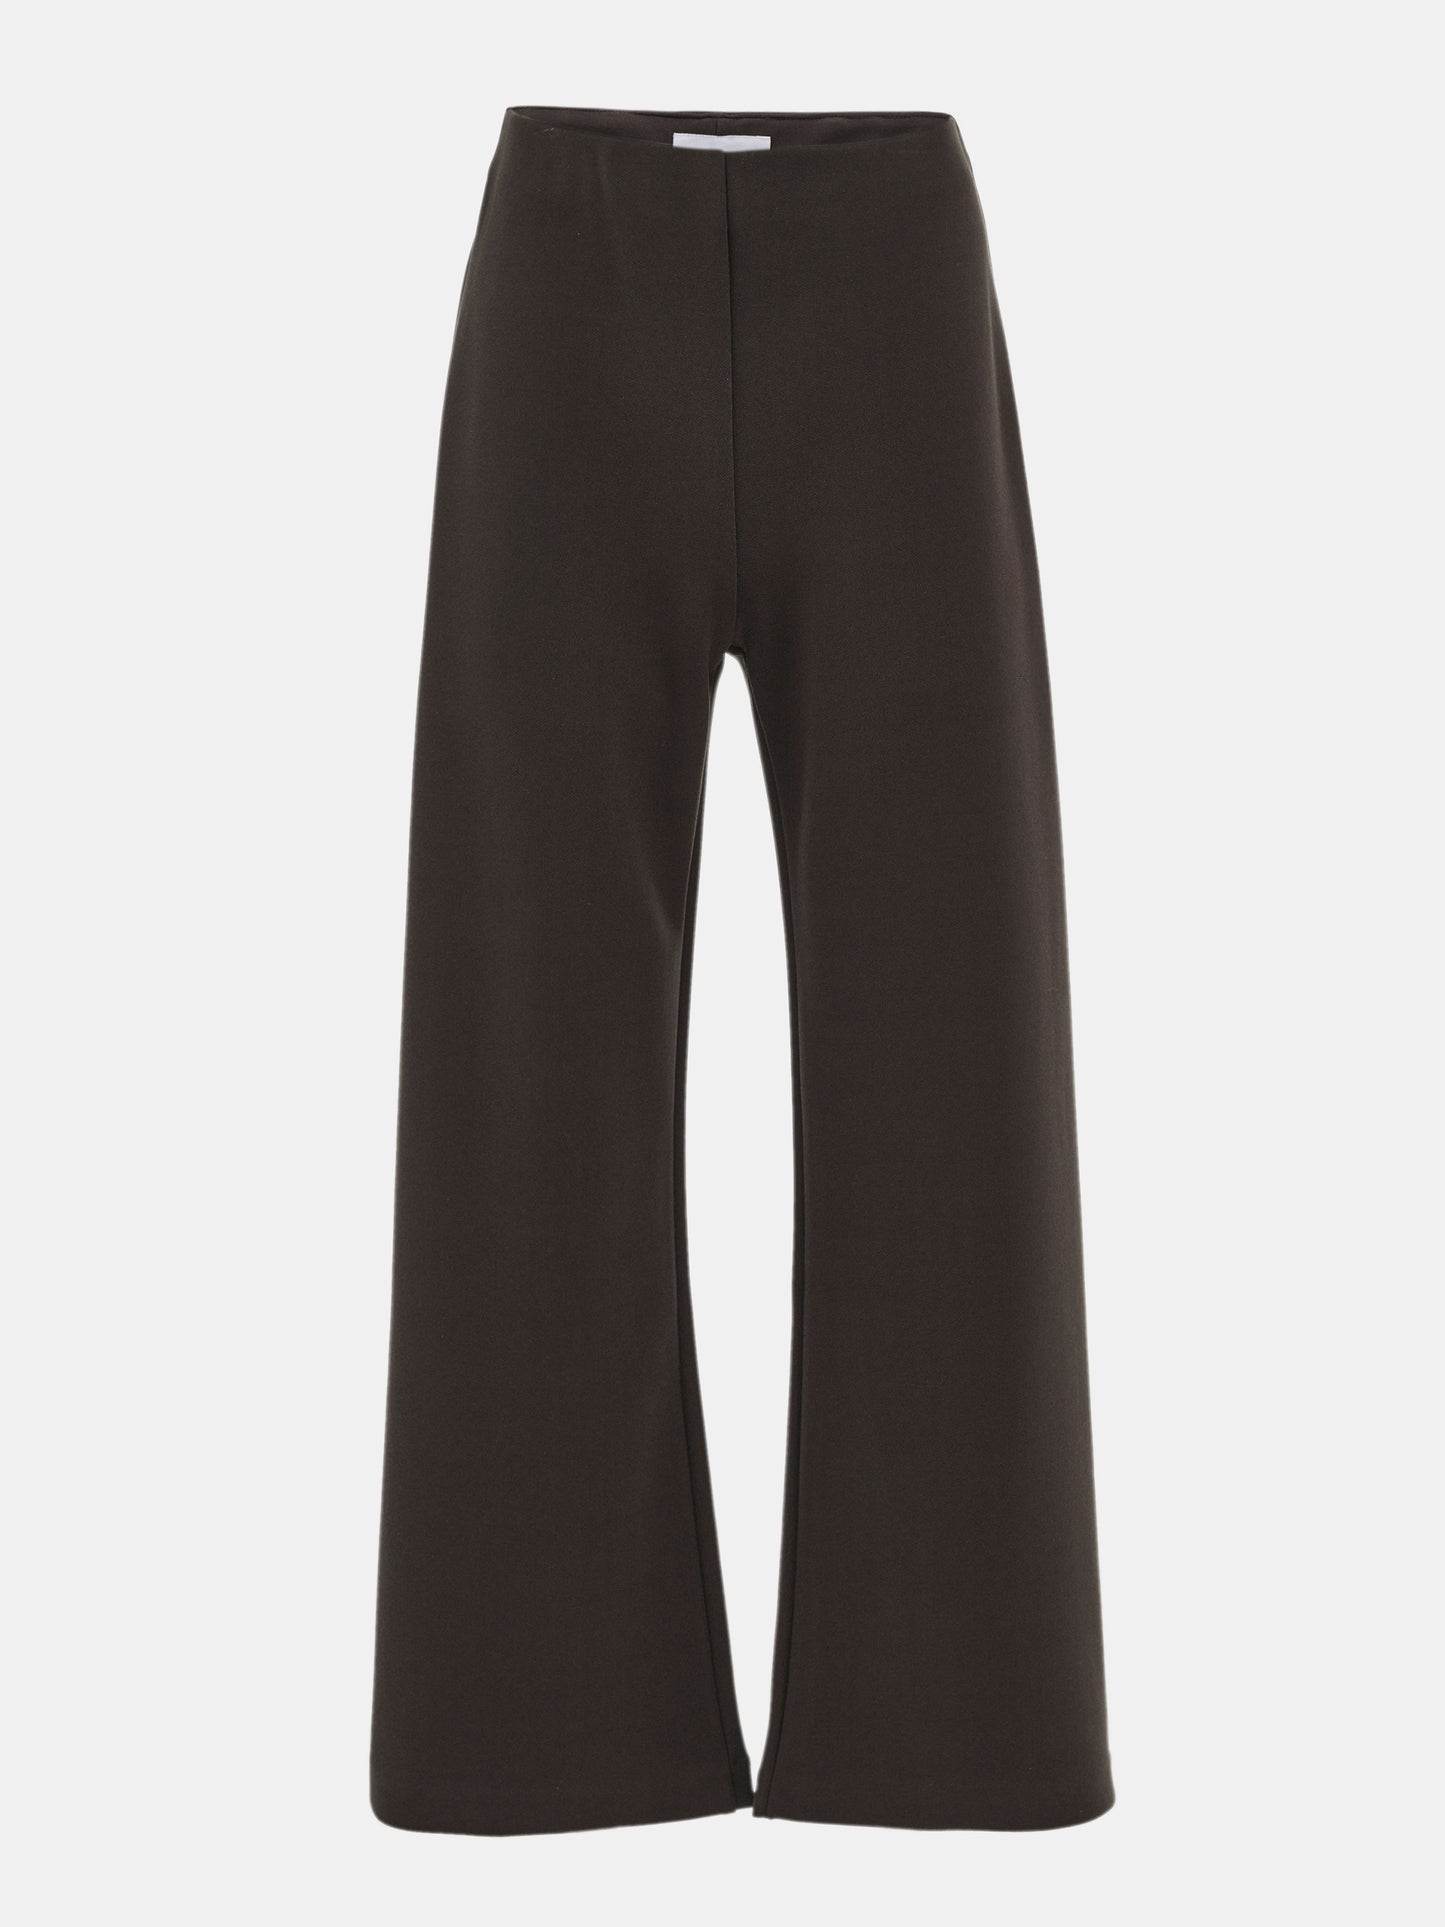 Elasticated Comfort Trousers, Dark Brown